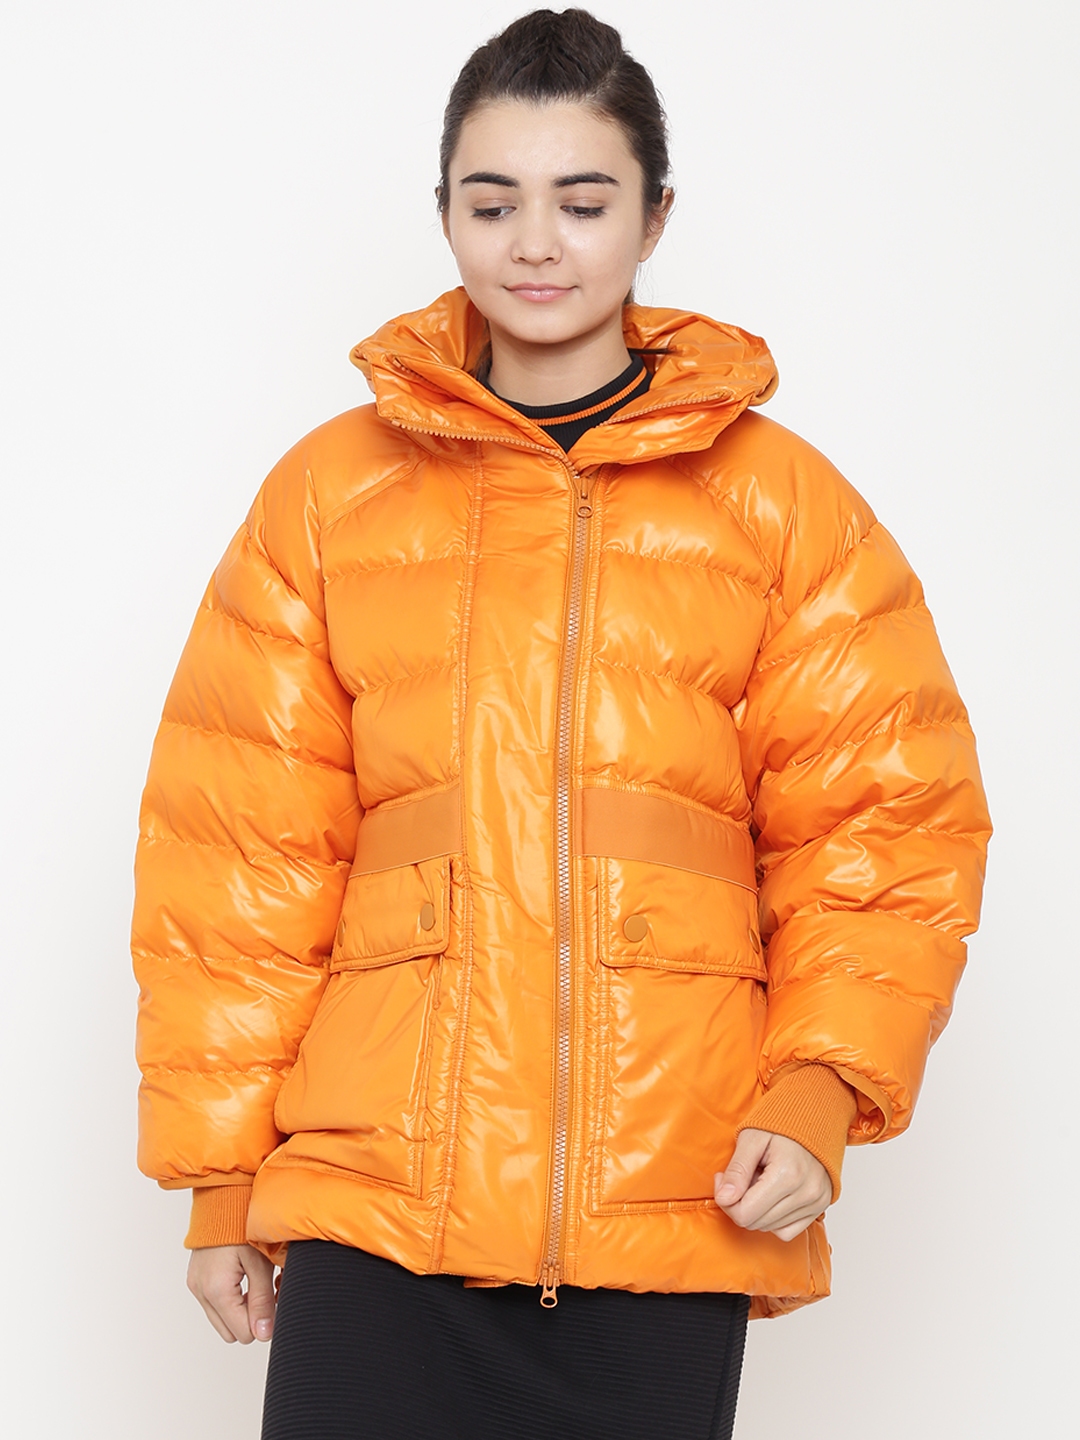 orange jacket adidas